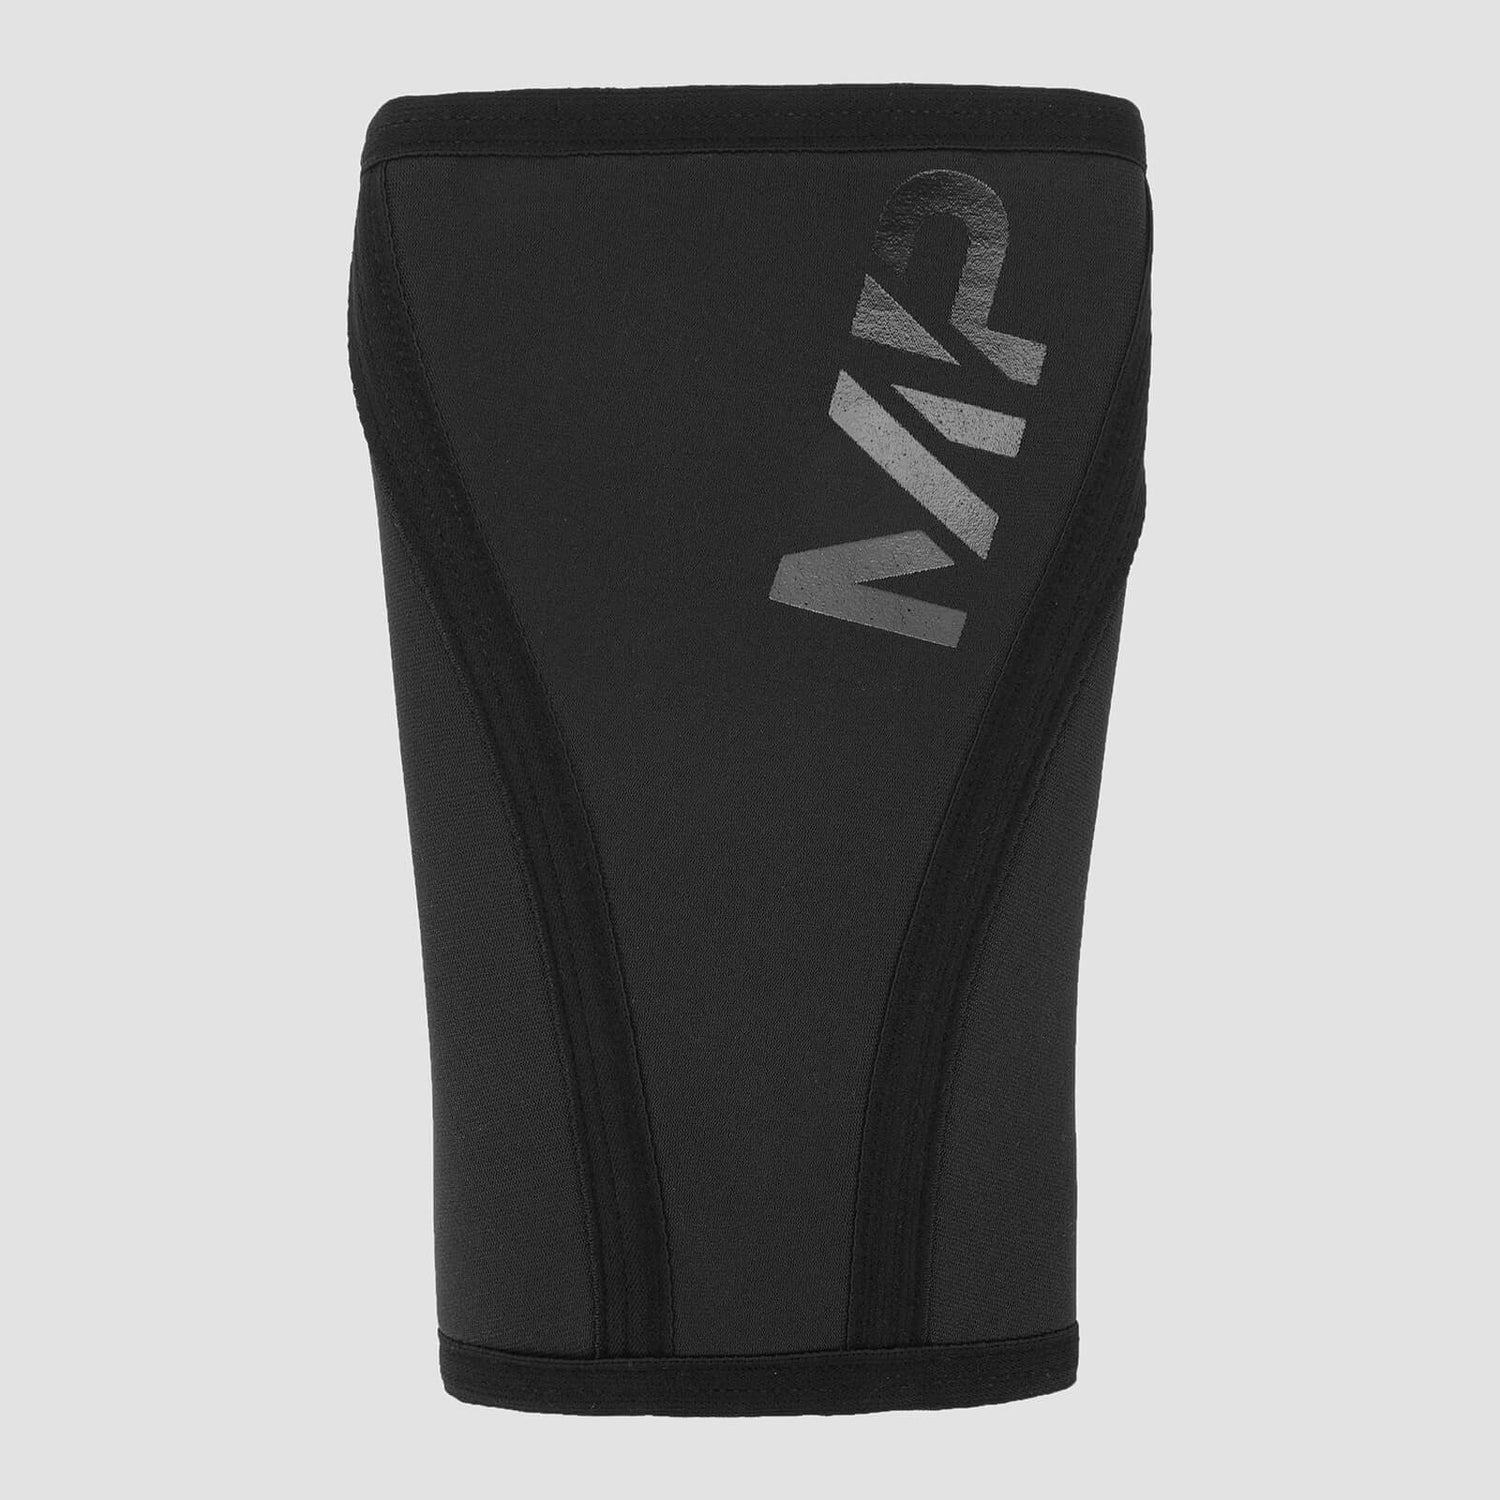 MP Unisex Training Knee Sleeve Pair - Black - XS